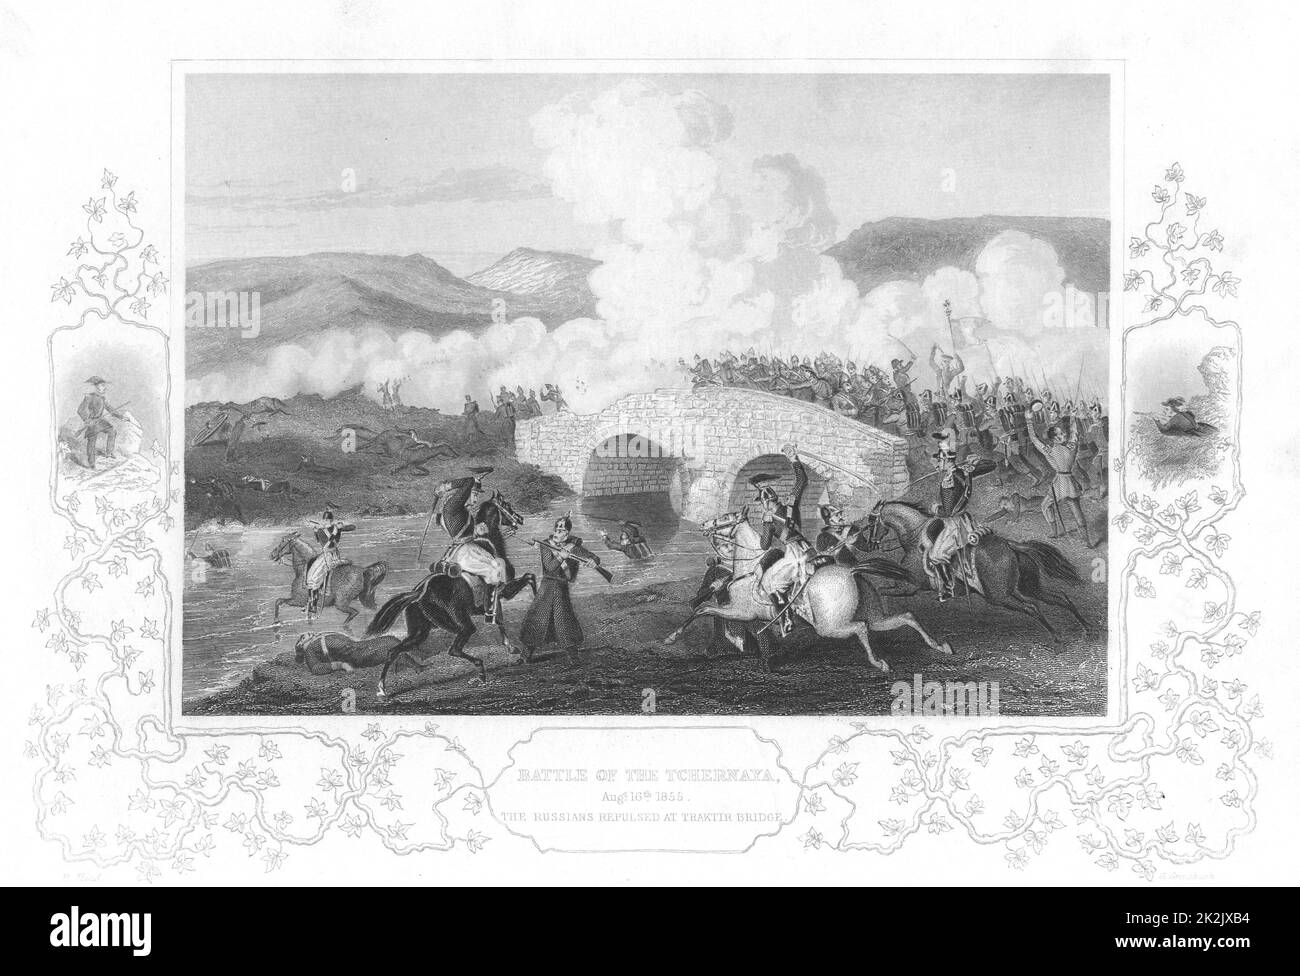 Russisch-türkischen (Krim) Krieg 1853-1856. Kampf der Tchernaya, 16. August 1855. Russen zurückgeschlagen am Traktir Brücke. Gravur c 1856 Stockfoto